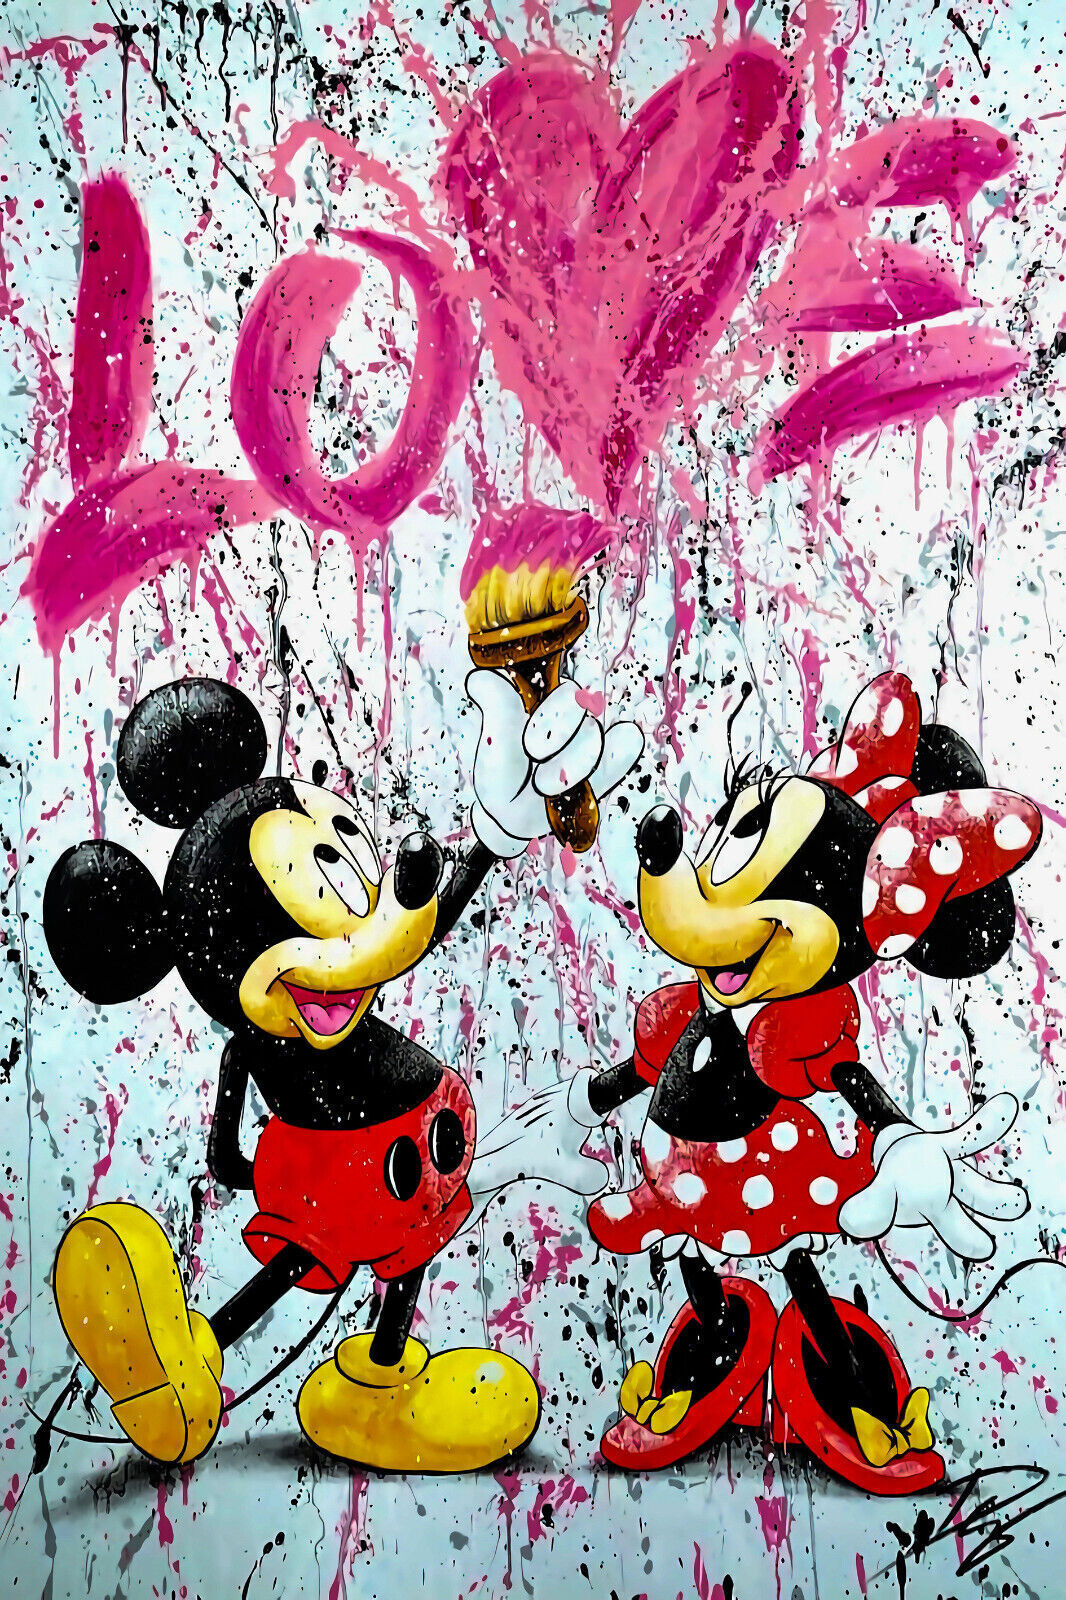 x582 XXL Leinwandbilder Liebe Micky Minnie Mouse Disney Herz Street Art Handgemalt - MEGA XXXL 160X90 CM Leinwandbilder inkl. Holzrahmen